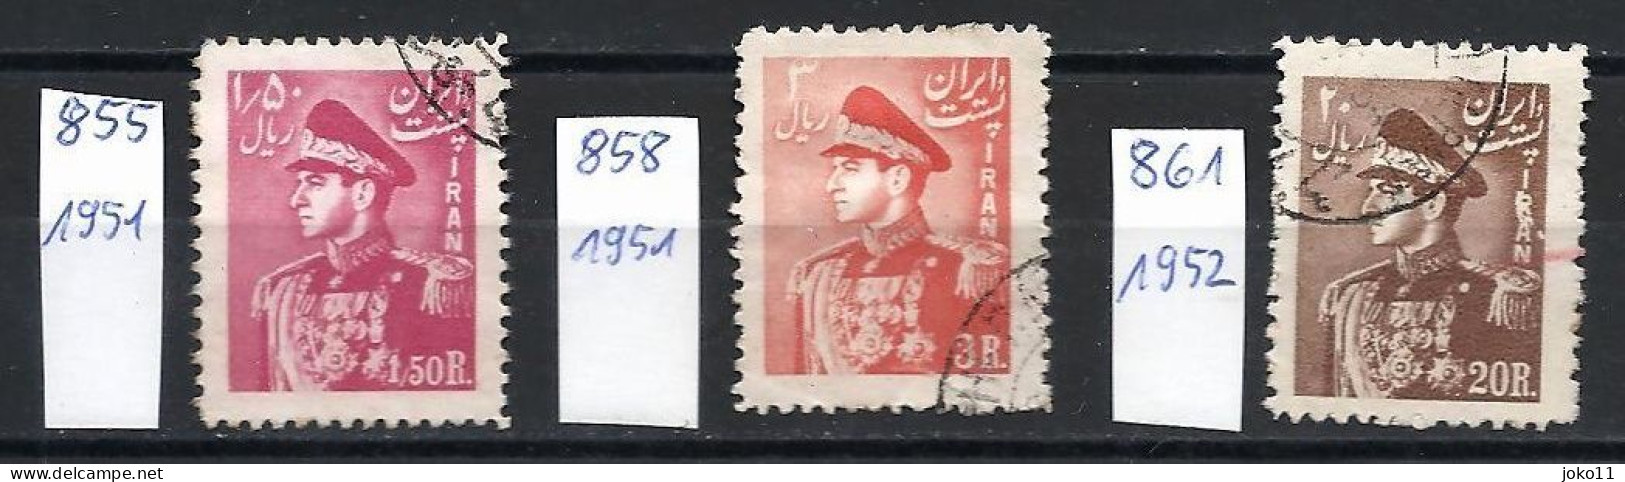 Iran, 1951-52, Mi.-Nr. 855+858+861 Gestempelt - Iran